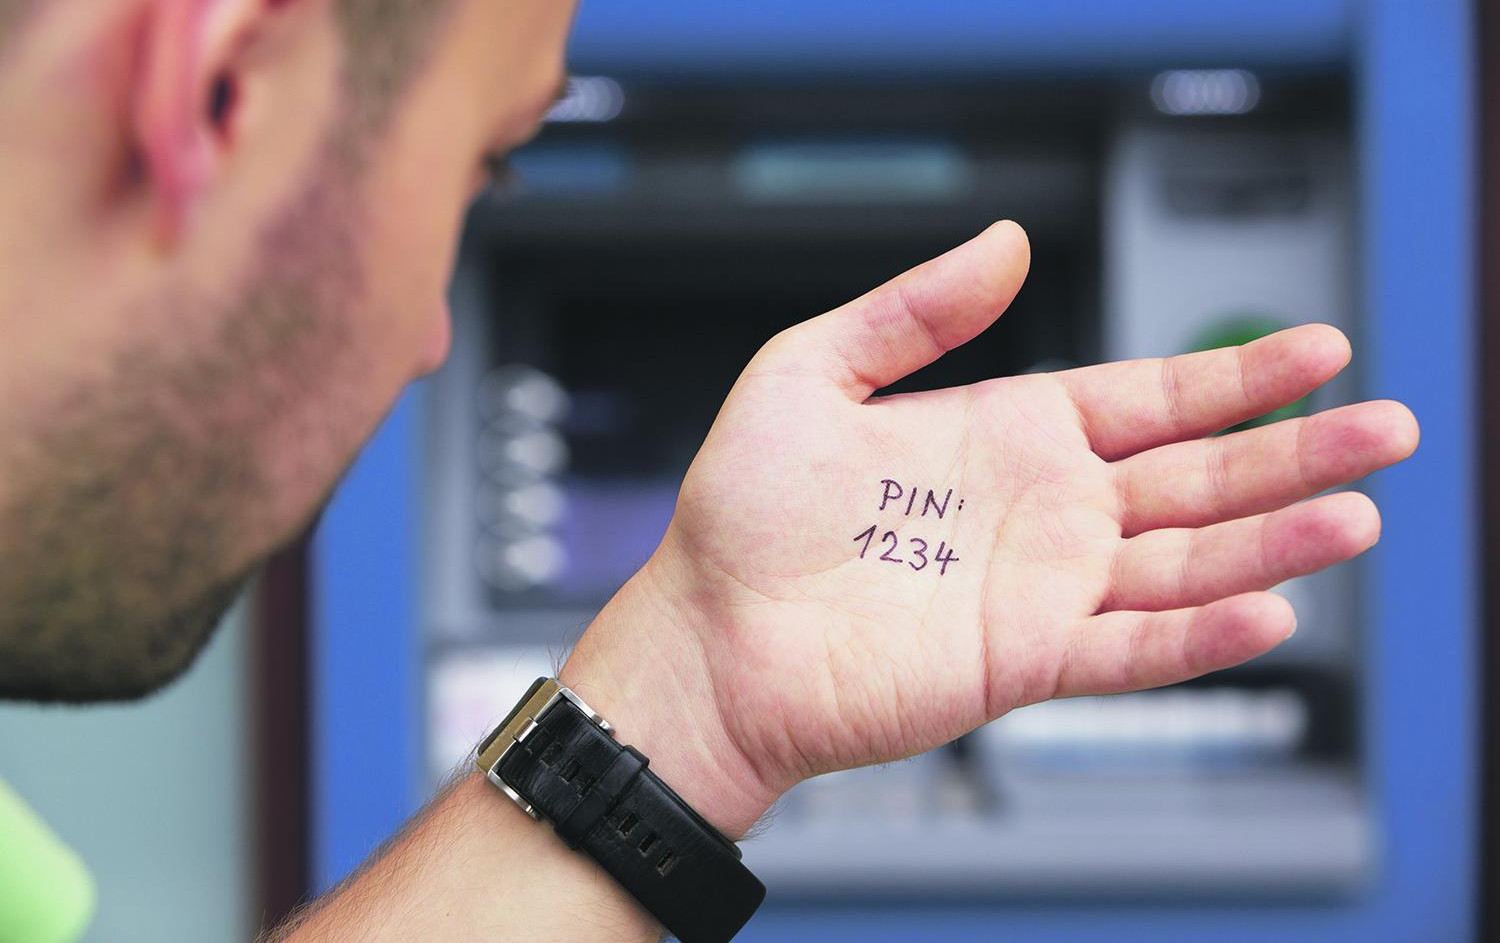 POTPIS ODLAZI U ISTORIJU: Zbog veće sigurnosti, obavezan pin za plaćanje kreditnim karticama!